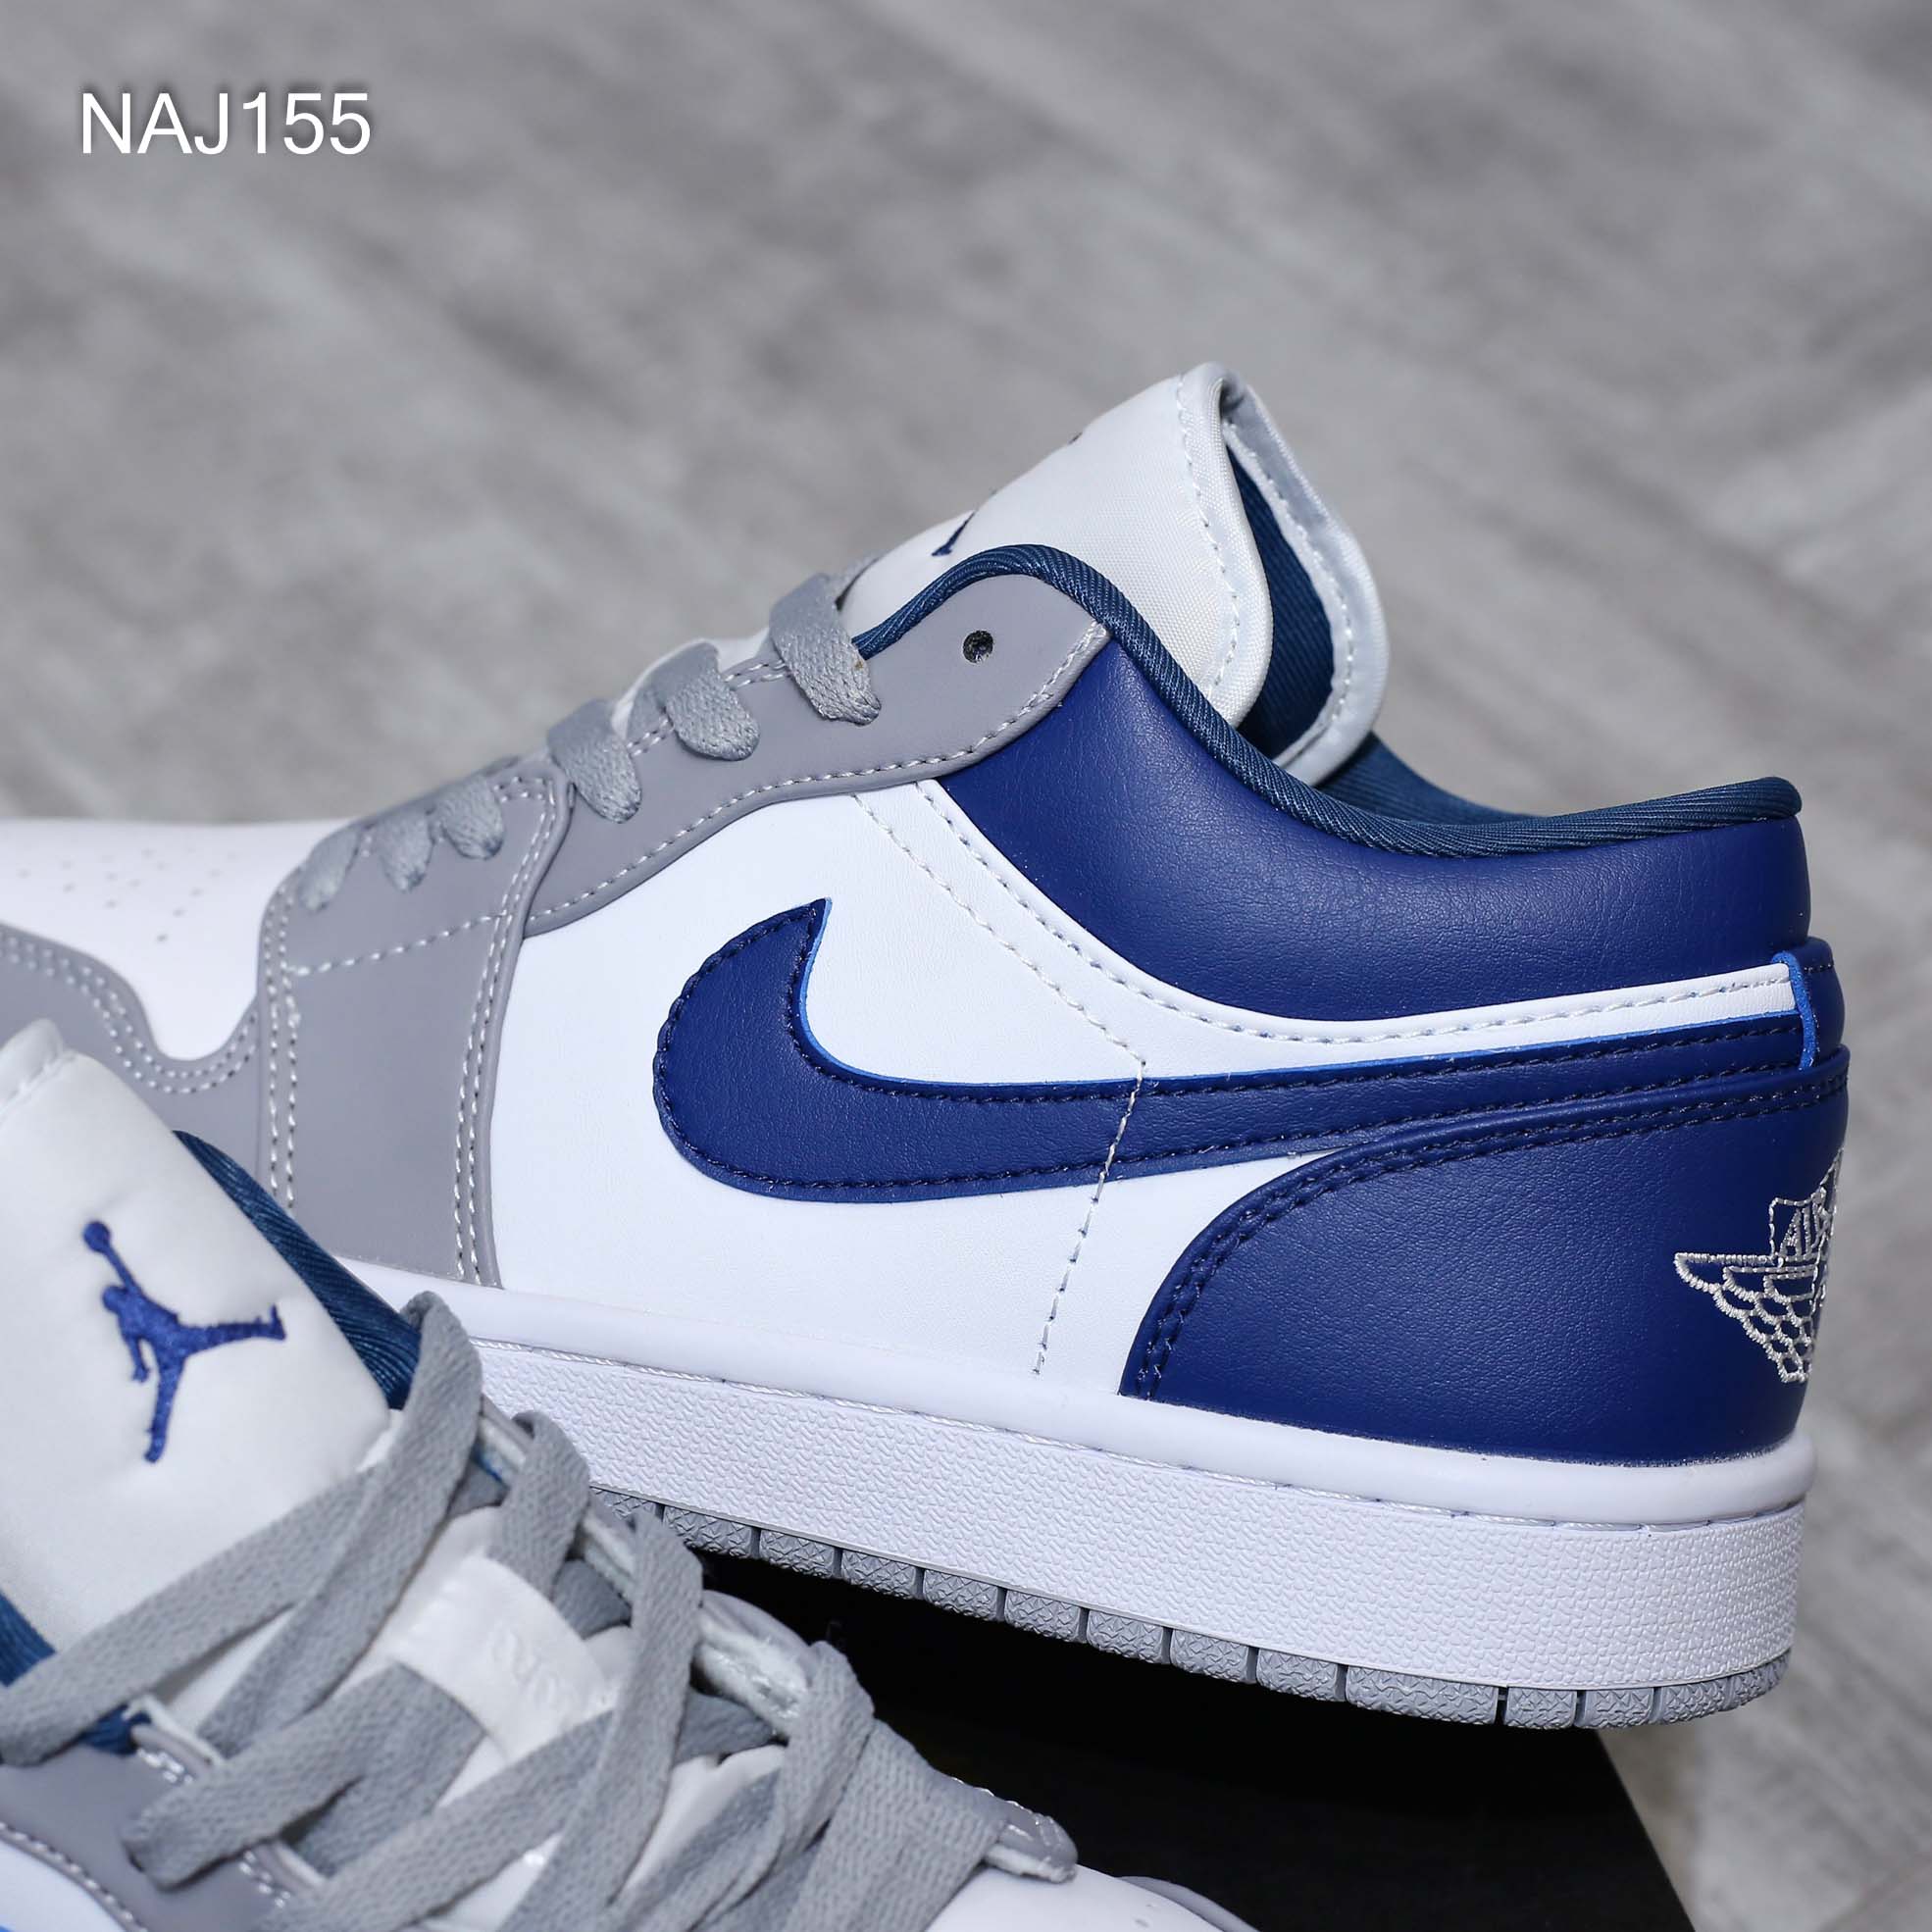 Giày Nike Air Jordan 1 Low ‘French Blue’ Xanh Xám Rep 1:1